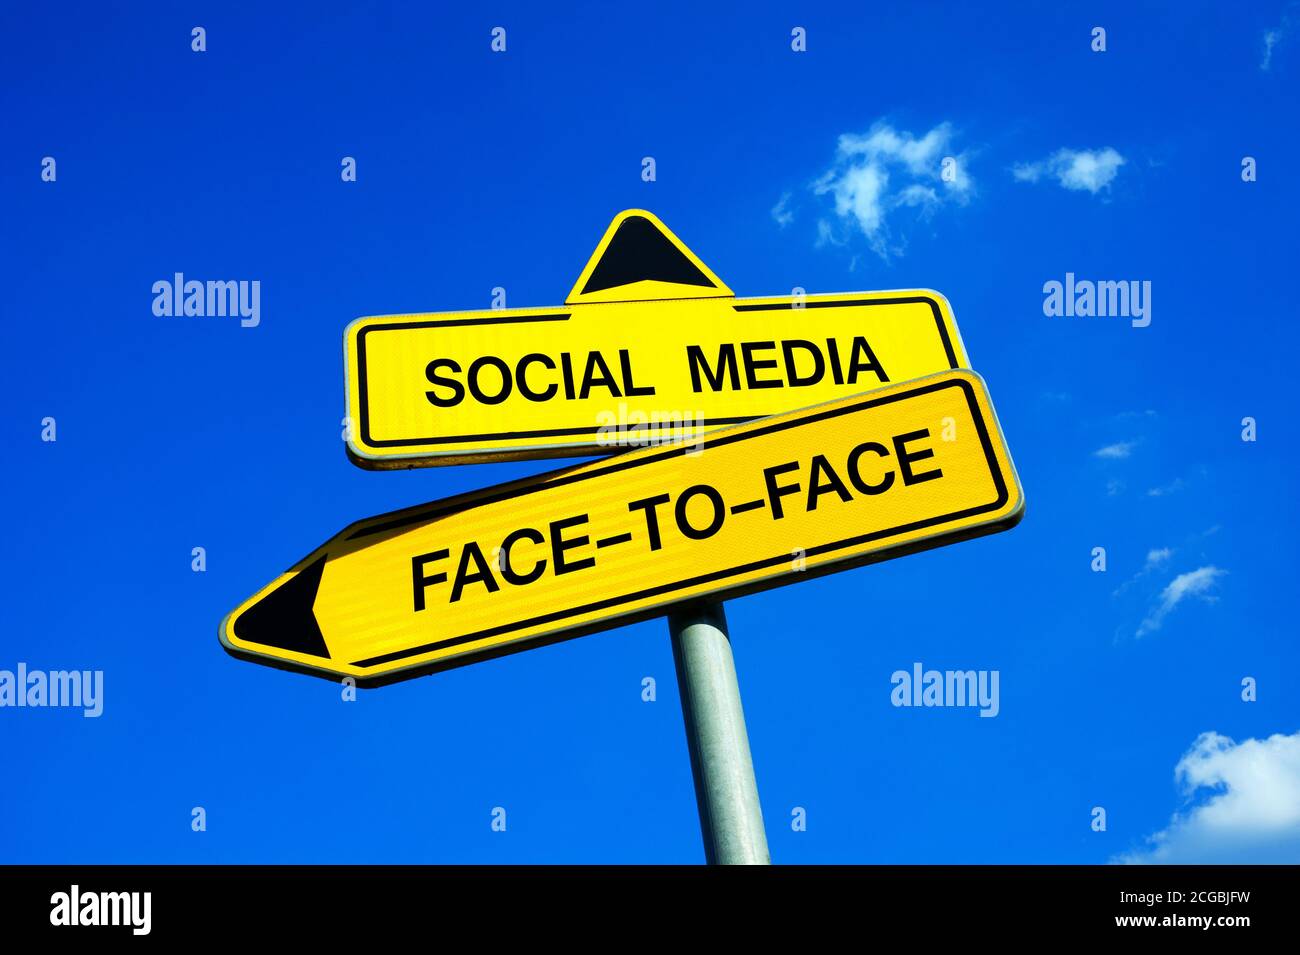 Médias sociaux ou face à face - signalisation routière avec deux options - question de communication Internet, compétences sociales, interaction personnelle face à face Banque D'Images